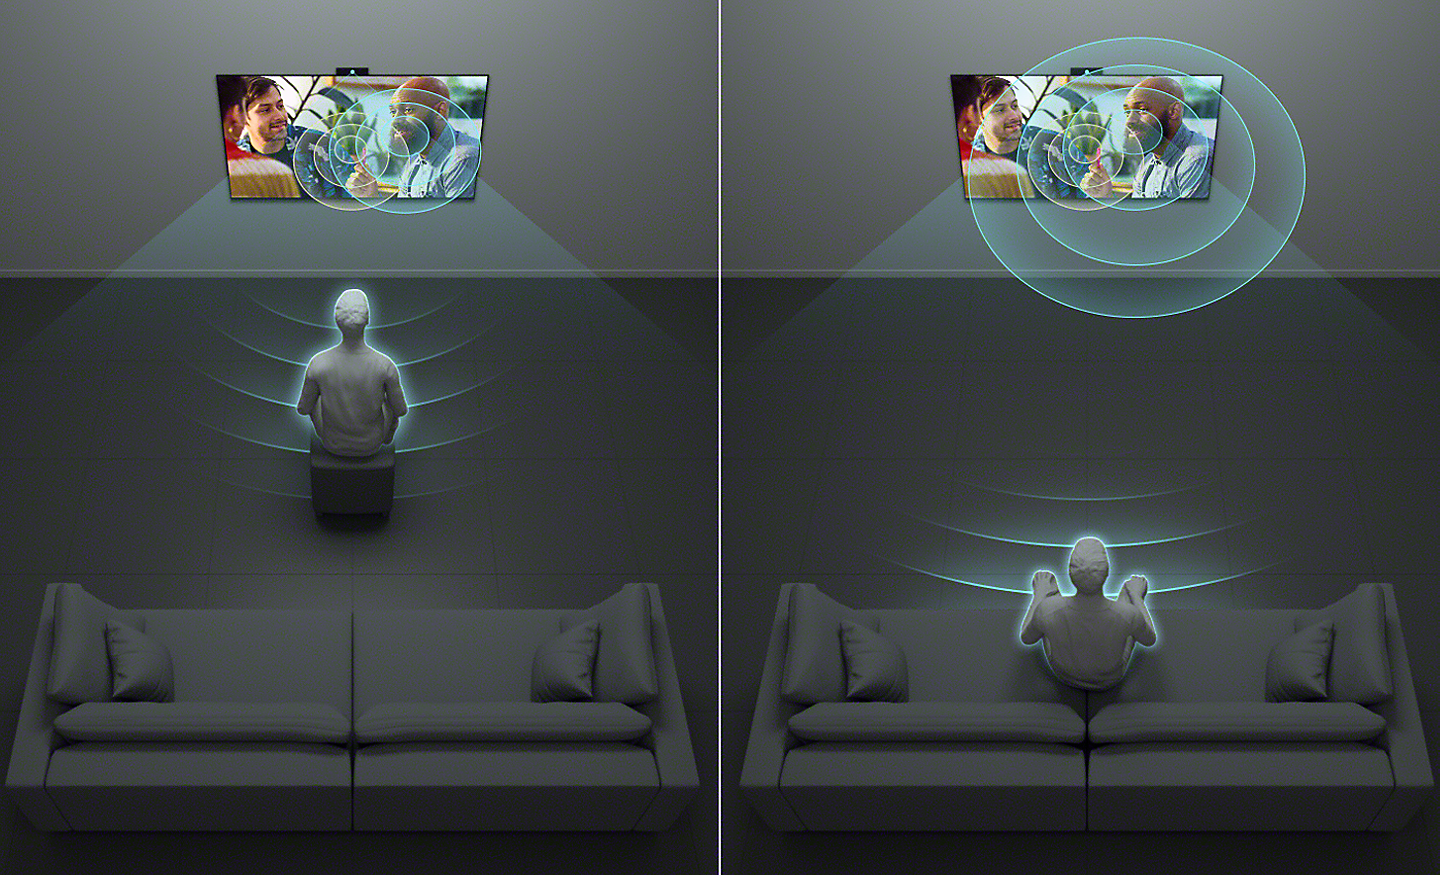 Graphique à écran partagé montrant une personne regardant la télévision depuis différentes positions : assise de près et assise plus en arrière